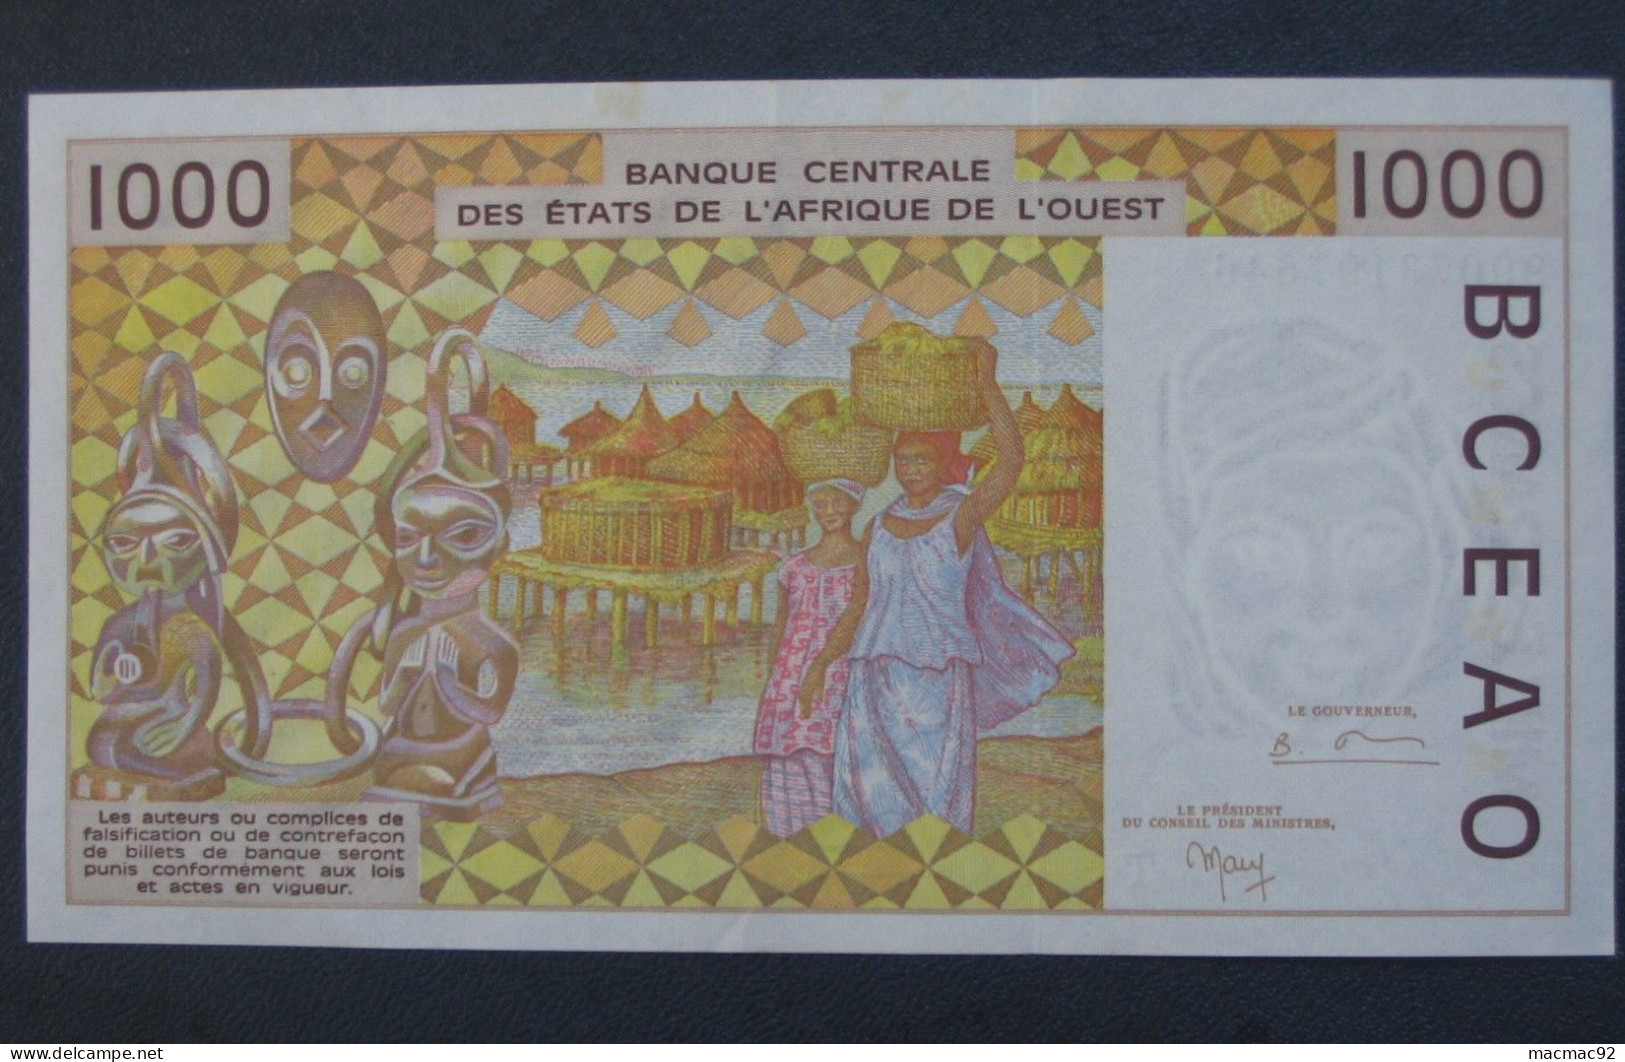 TOGO - 1000 Mille Francs 1999 - Banque Centrale Des états De L'Afrique De L'Ouest  **** EN ACHAT IMMEDIAT **** - Togo